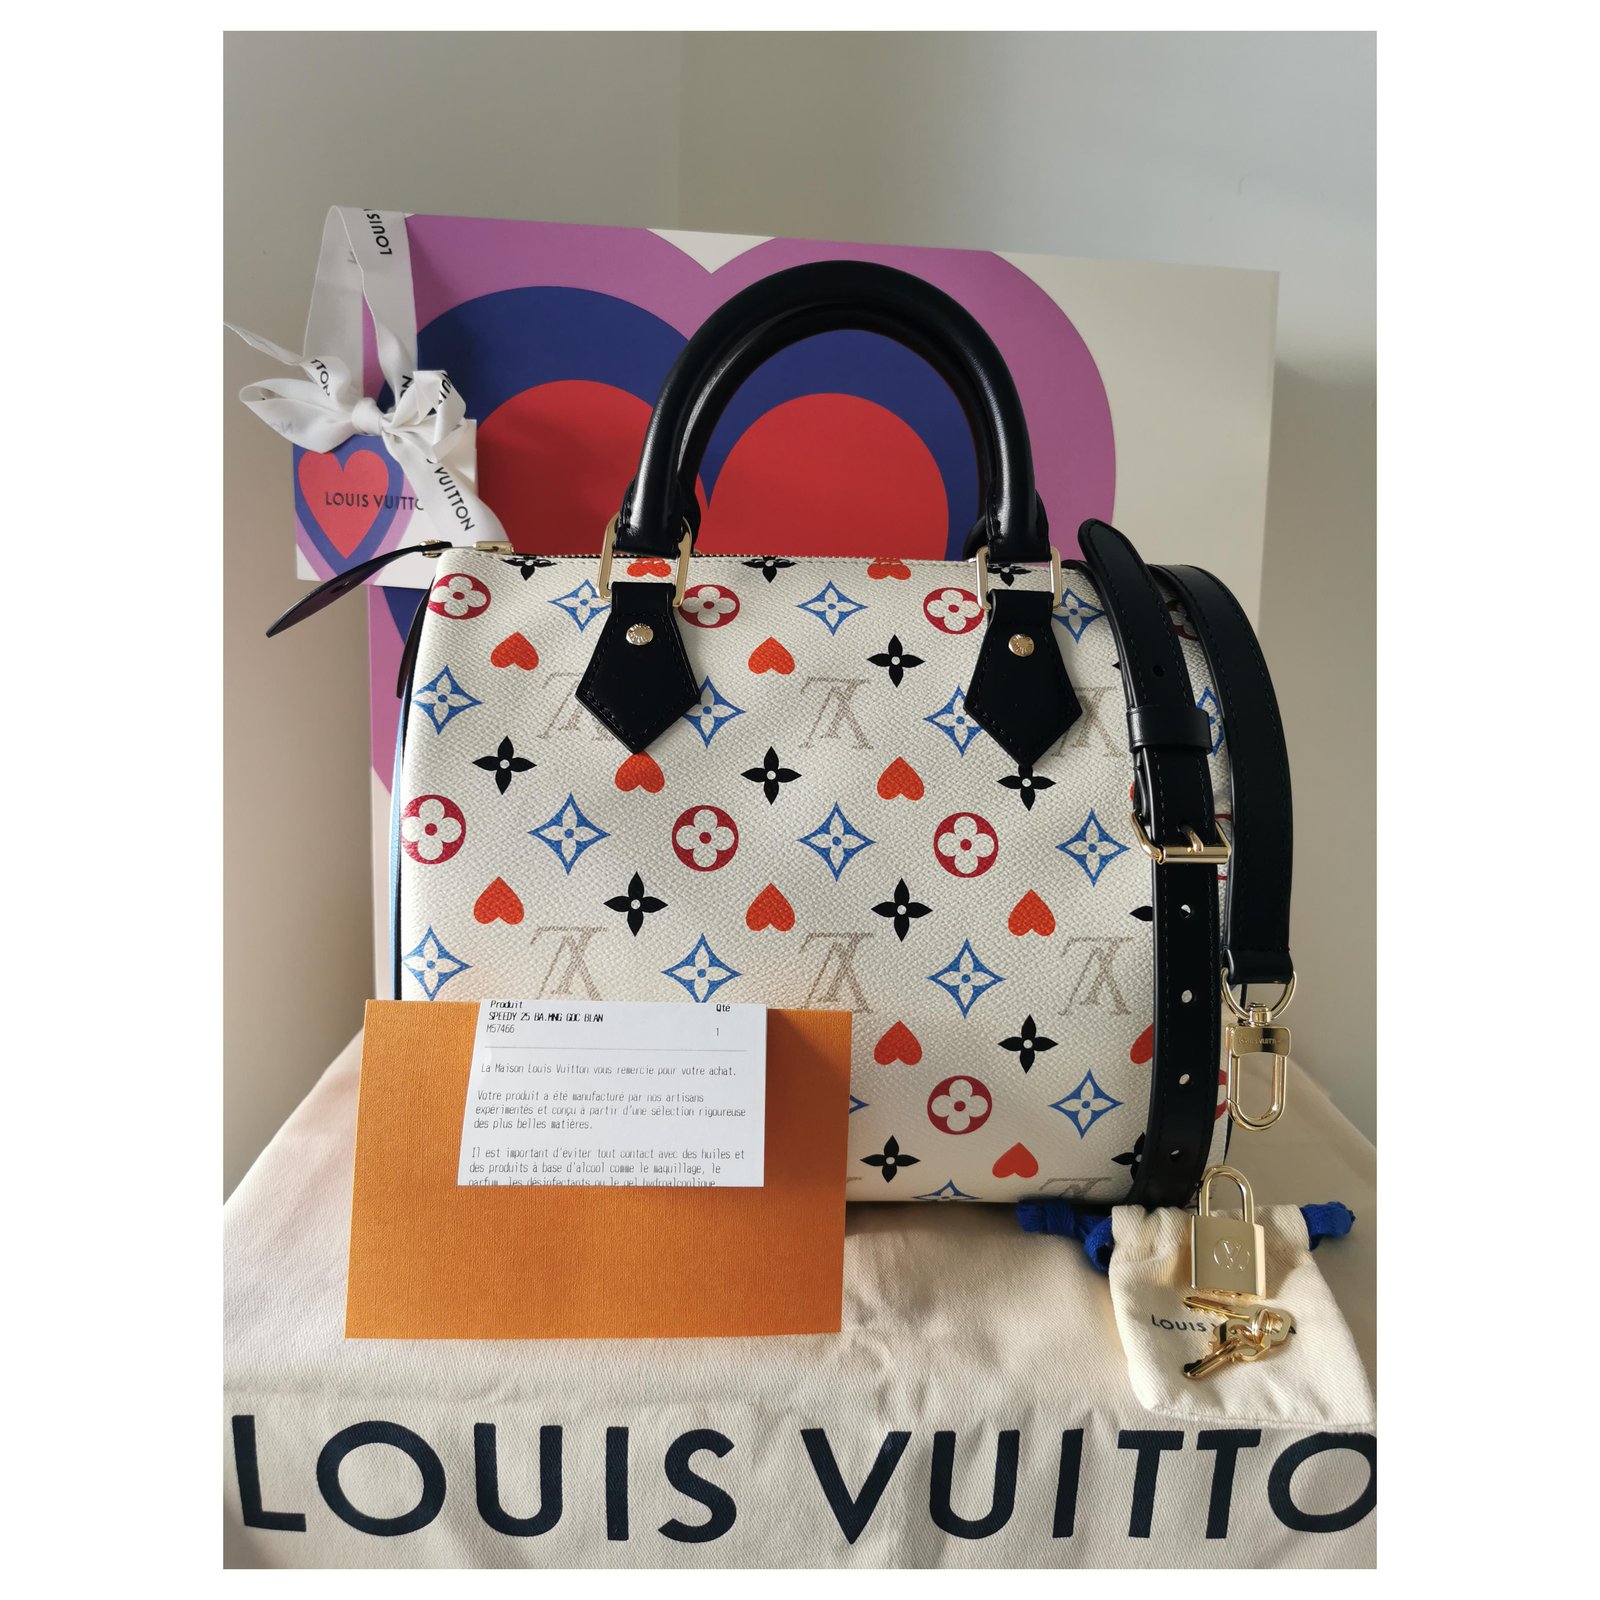 Handbags Louis Vuitton New Louis Vuitton Speedy Handbag 30 Sunshine Express Sequin M40798 Hand Bag